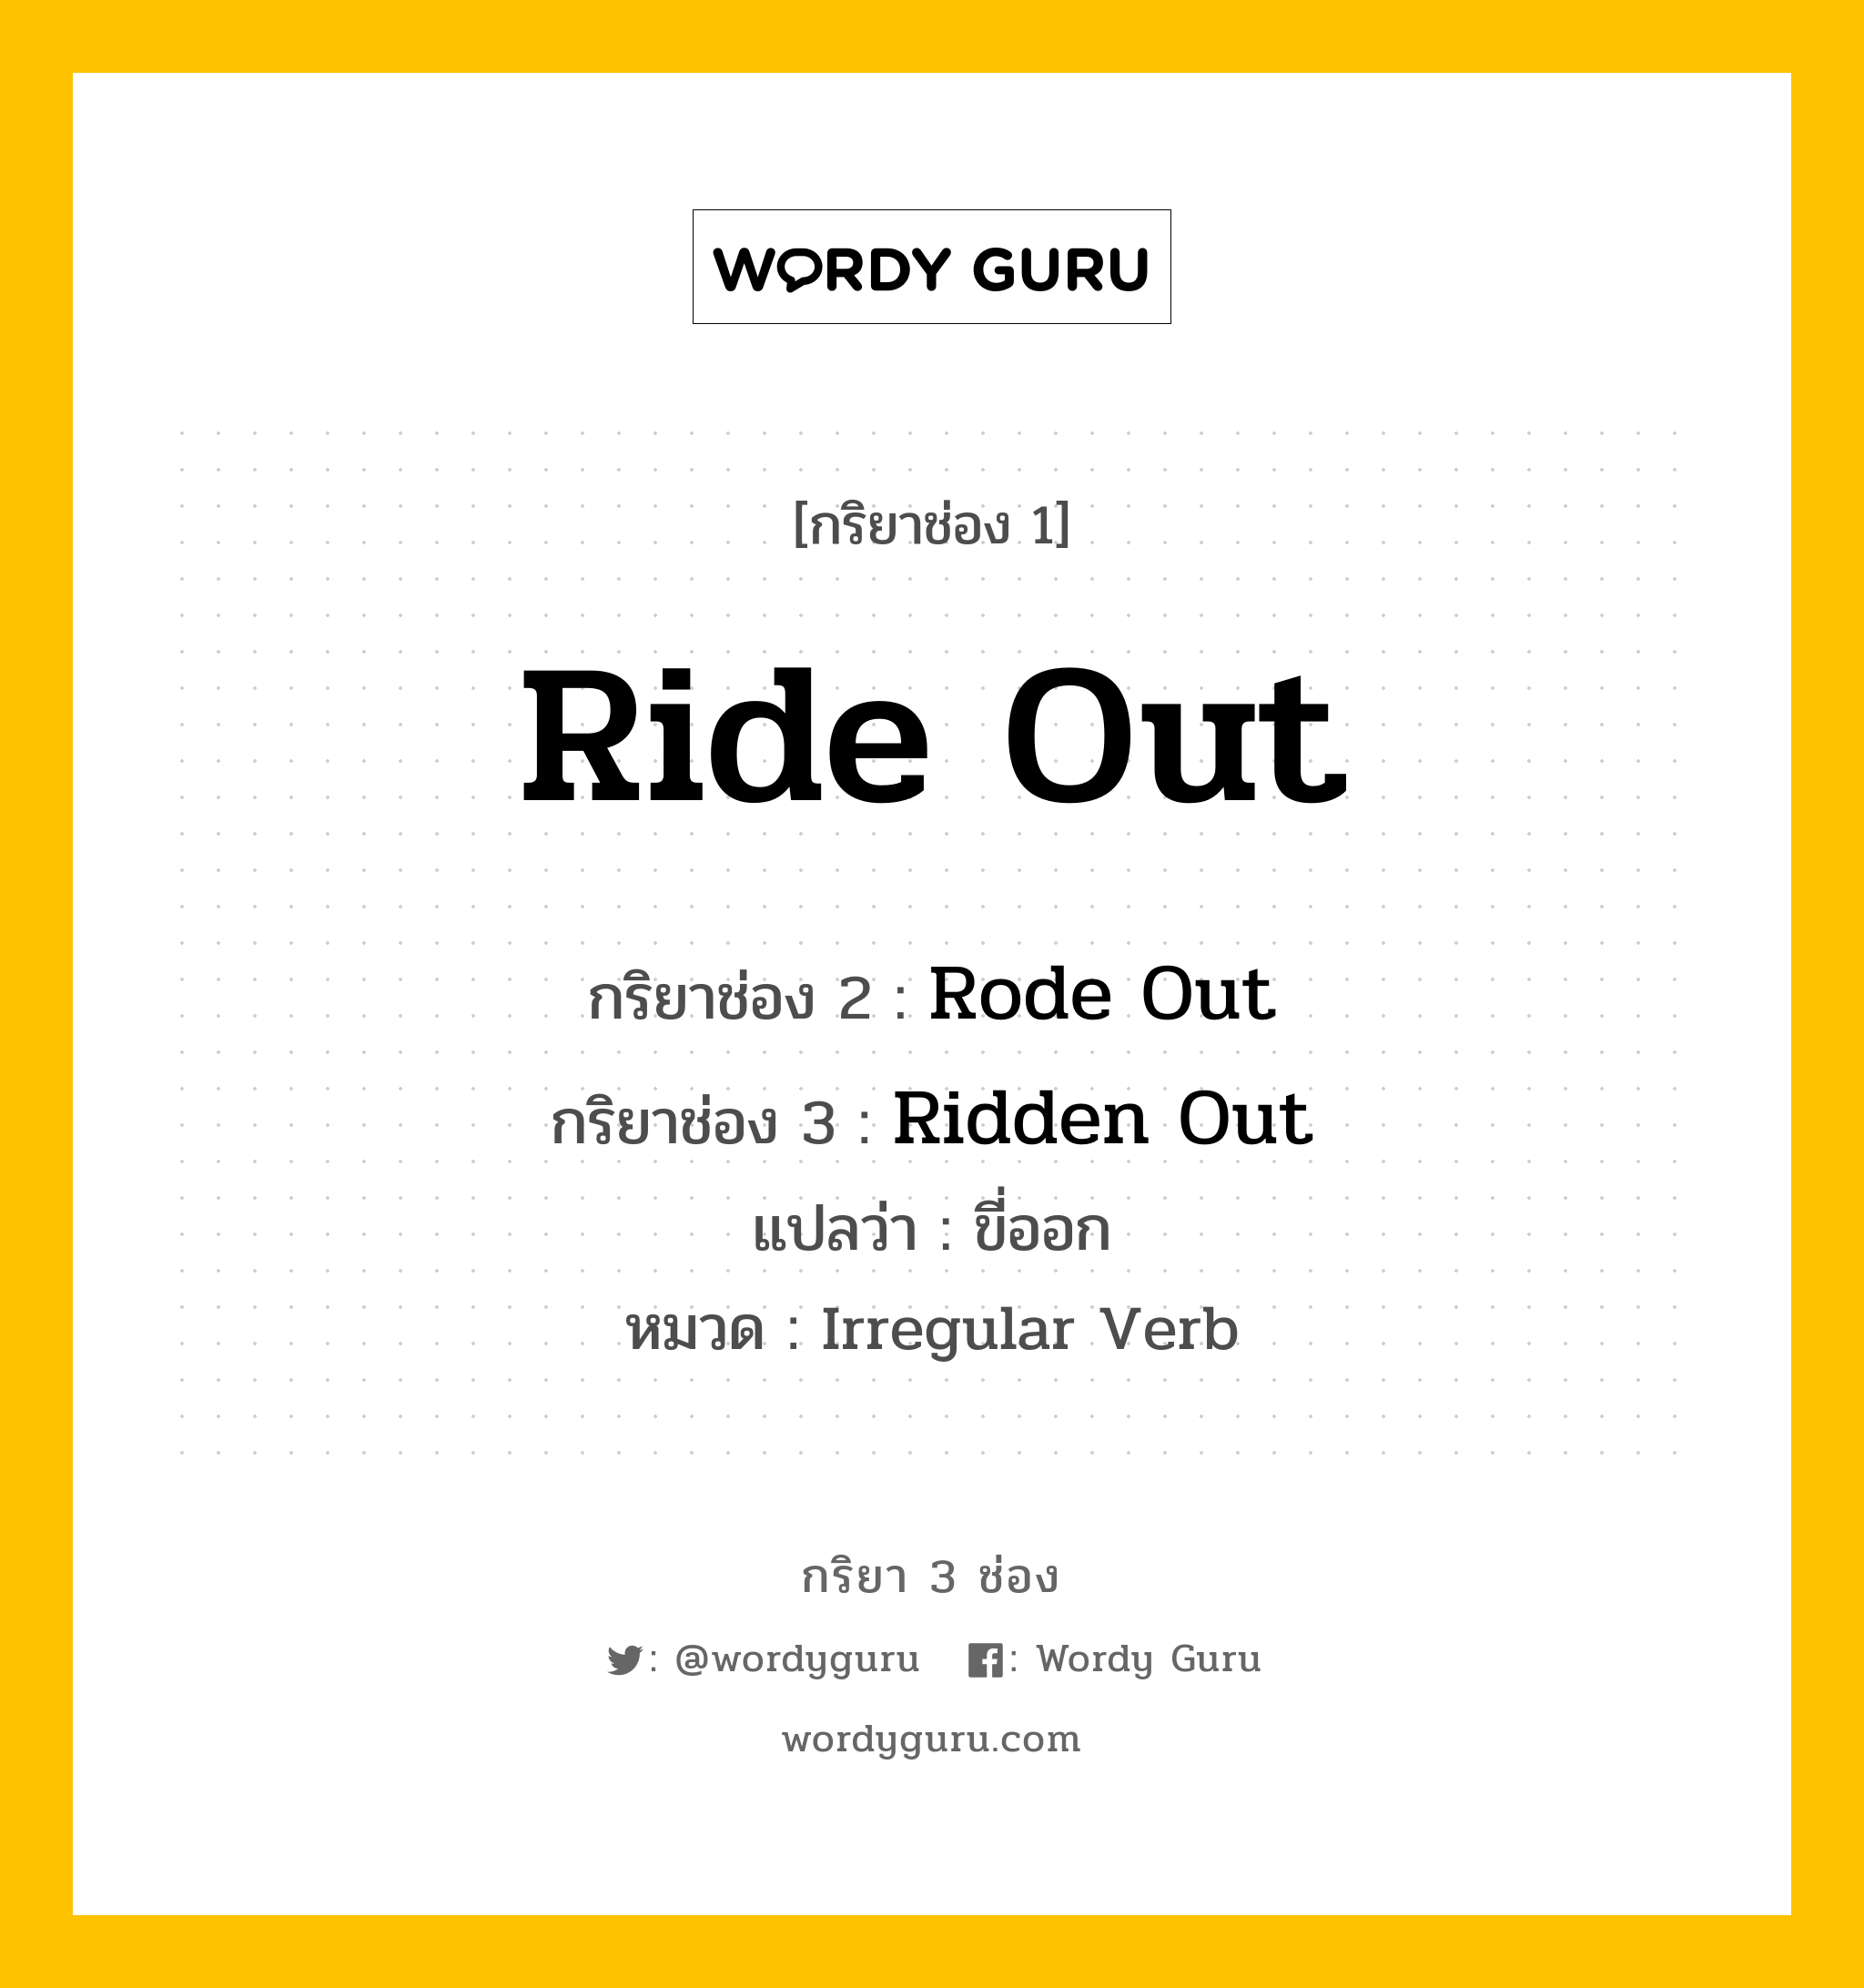 กริยา 3 ช่อง: Ride Out ช่อง 2 Ride Out ช่อง 3 คืออะไร, กริยาช่อง 1 Ride Out กริยาช่อง 2 Rode Out กริยาช่อง 3 Ridden Out แปลว่า ขี่ออก หมวด Irregular Verb หมวด Irregular Verb